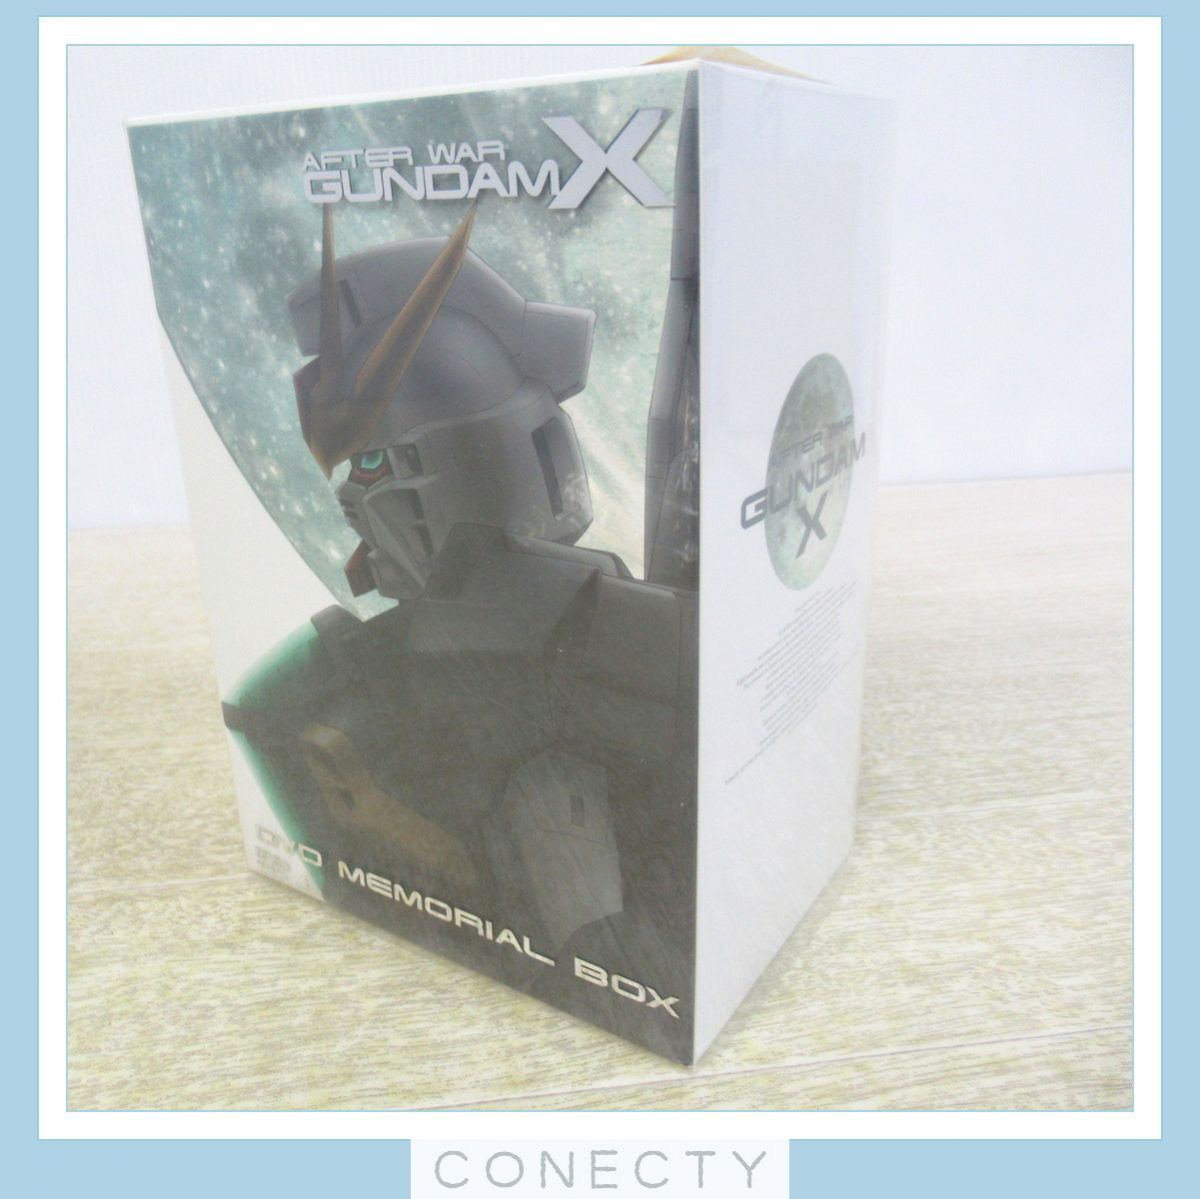 機動新世紀ガンダムX DVD メモリアルBOX 全巻セット 初回限定版 AFTER WAR GUNDAM X【S3【S1の画像1